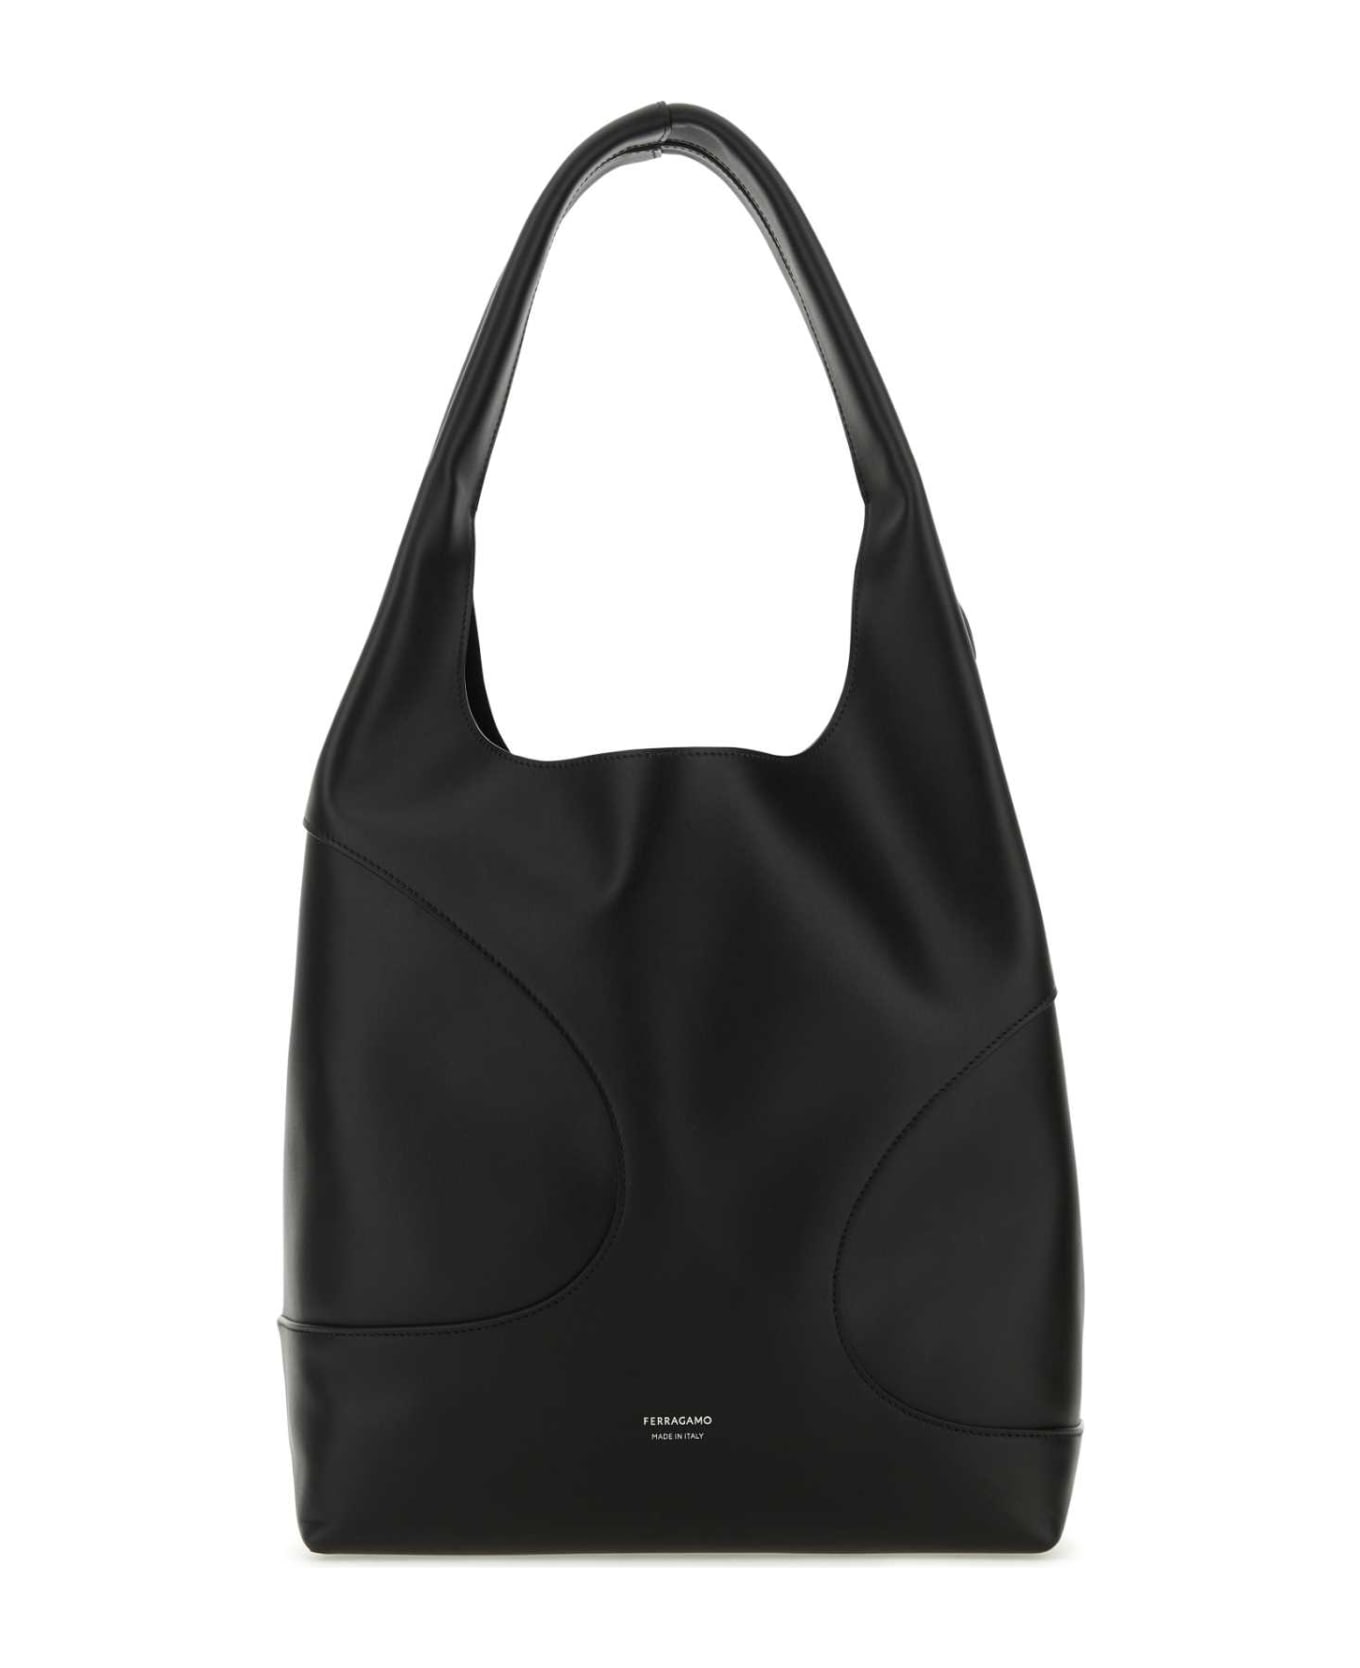 Ferragamo Black Leather Shoulder Bag - TESTADIMORODARKBAROLODARKBAROLO